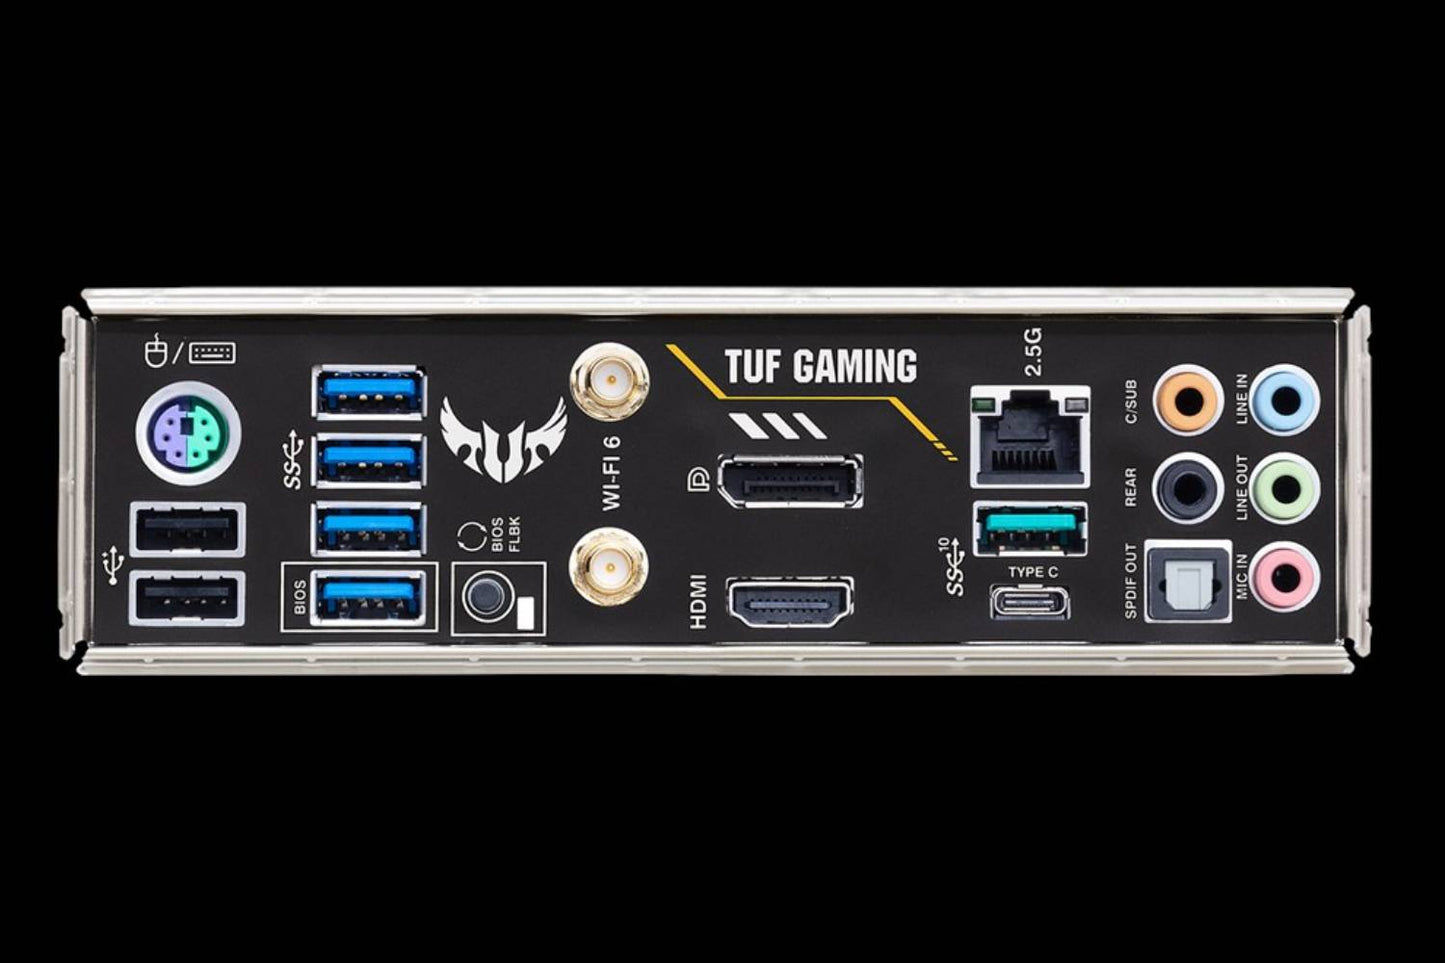 Asus TUF Gaming B550M-Plus (WI-FI) Motherboard